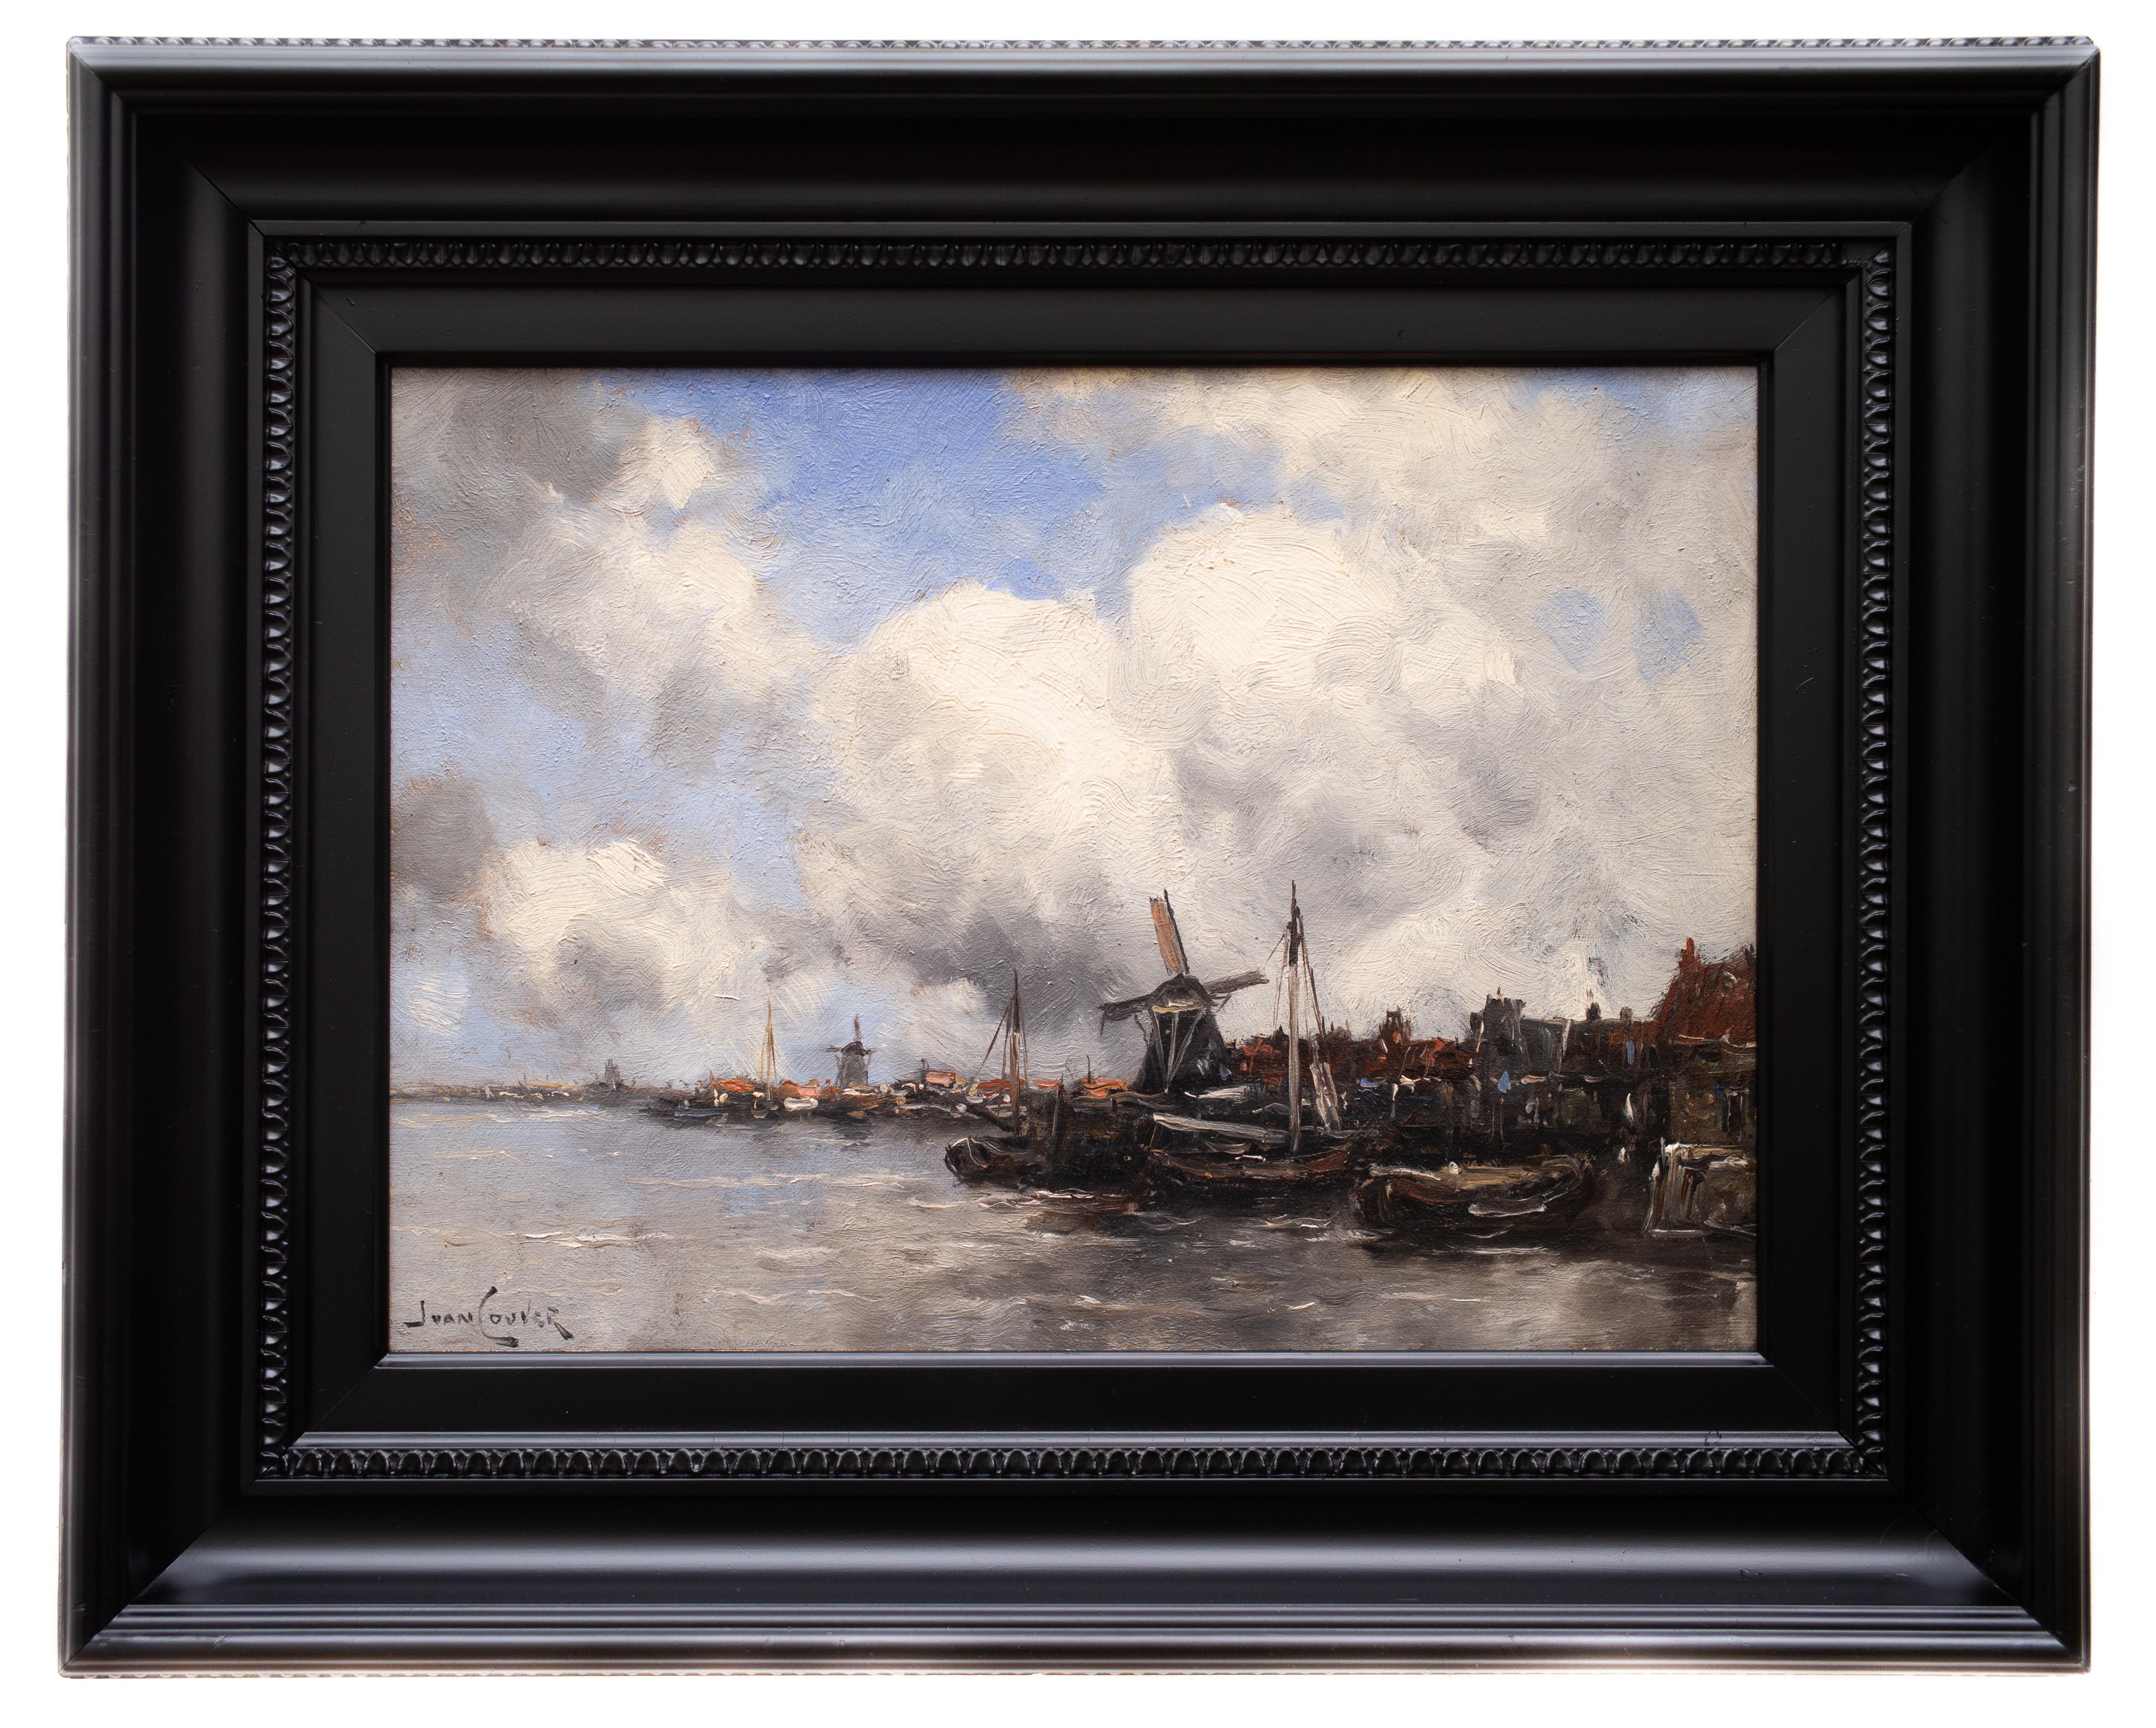 View of a Dutch Town by Jan van Couver (Hermanus Koekkoek Jr.) Impressionism - Painting by Jan Van Couver